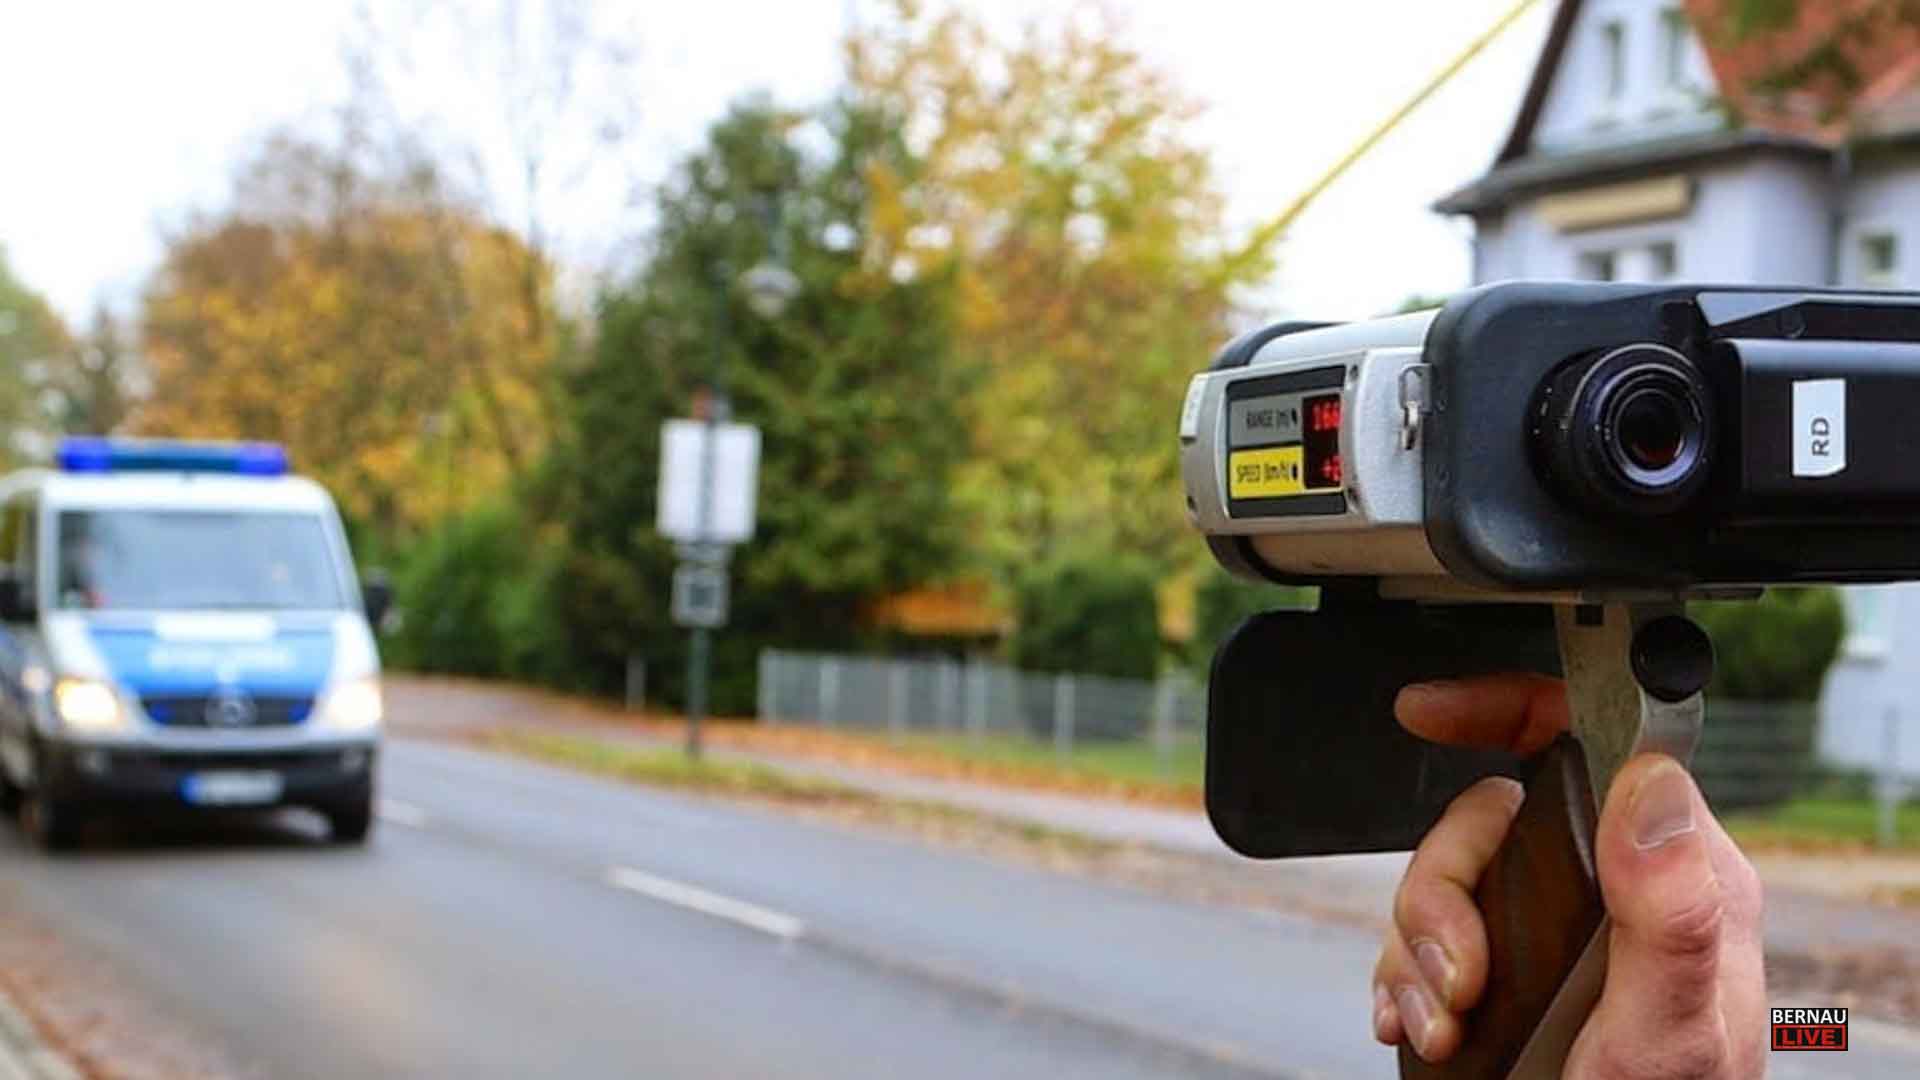 Speedmarathon - Auswertung des Landkreis Barnim und der Polizei